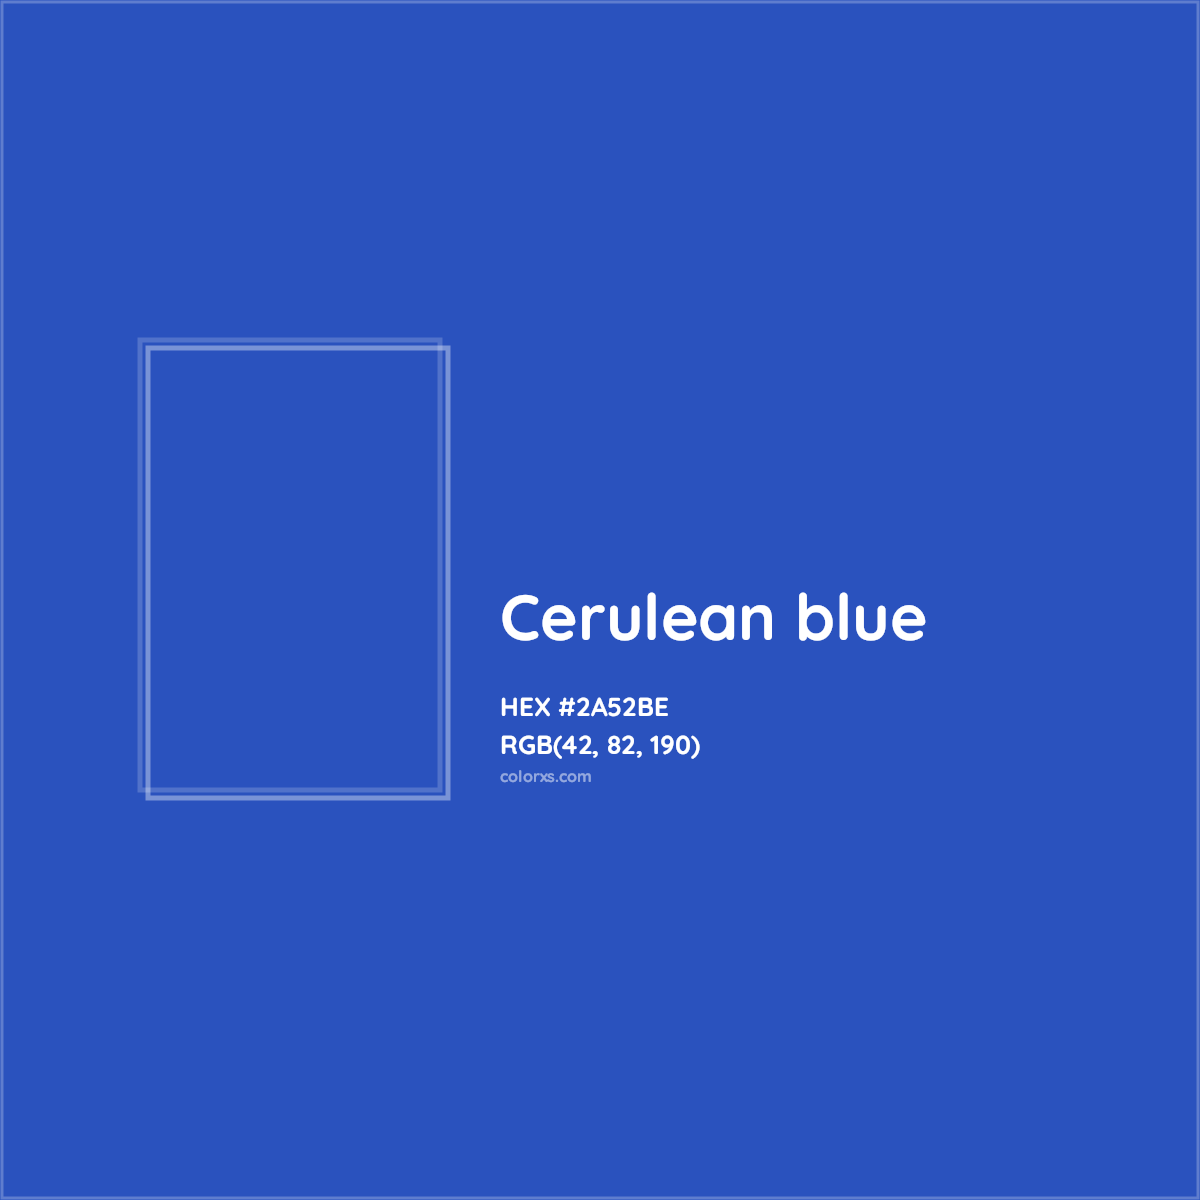 About Cerulean blue - Color codes, similar colors and paints 